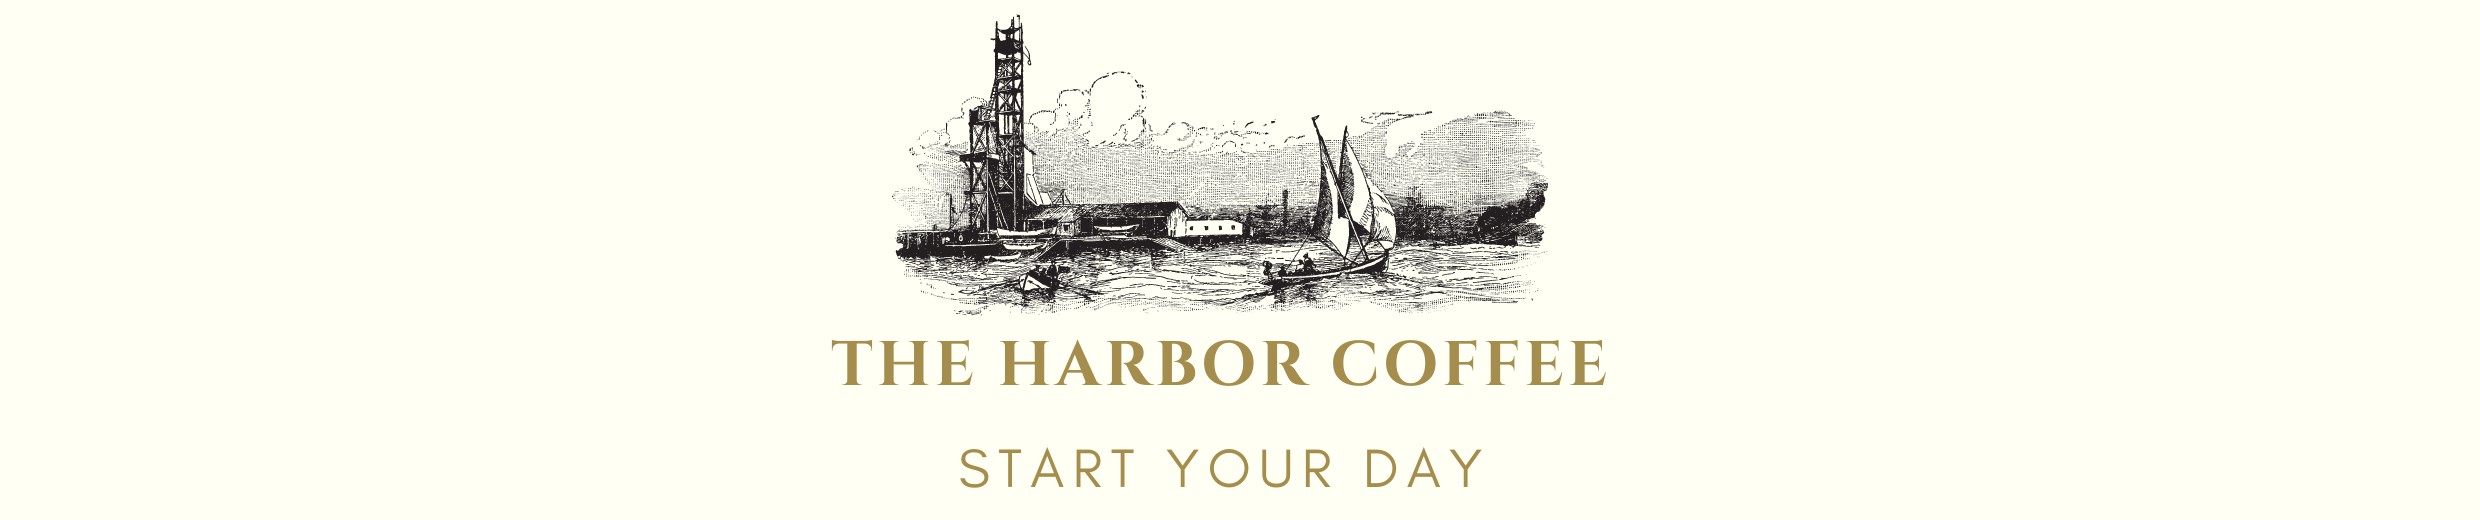 إستعرض كوبونات و عروض Harbor coffee | متجر مرفأ القهوه